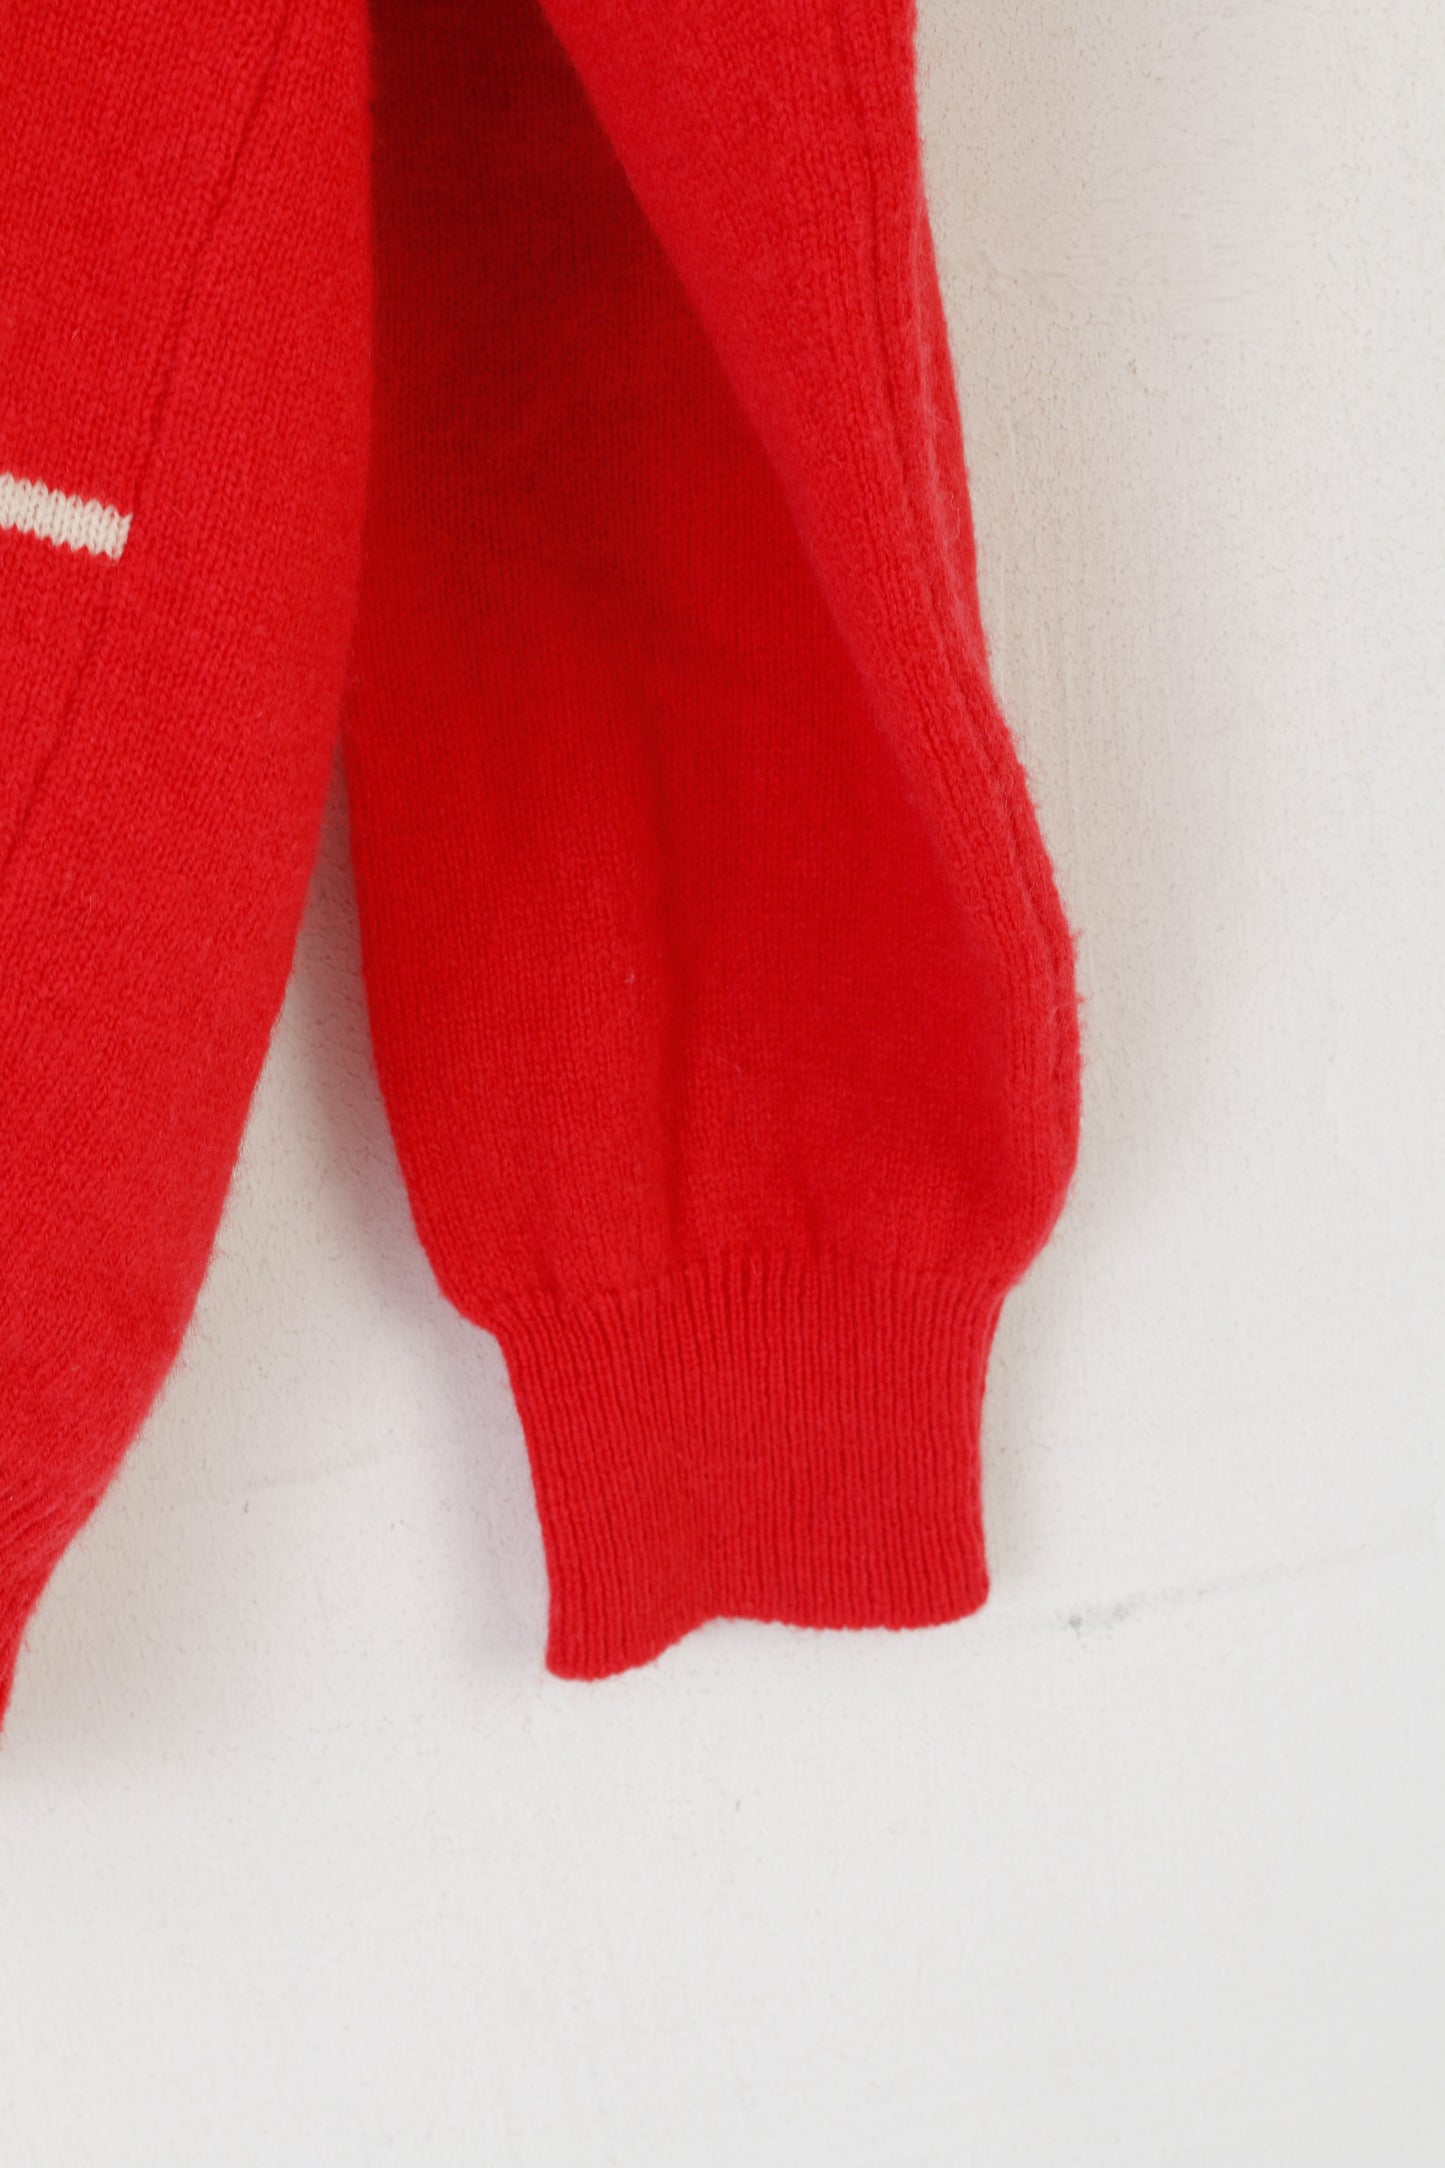 Golden Bear Jack Nicklaus Men 42 L Jumper Red Pure Wool V Neck Vintage Sweater